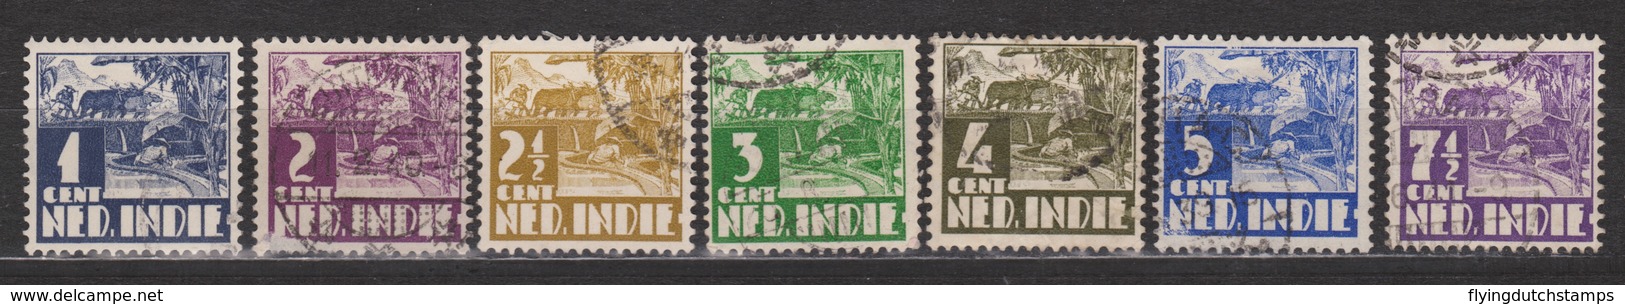 Nederlands Indie 246 247 248 249 250 251 252 Used Watermark ; Karbouw 1938 Netherlands Indies PER PIECE - Nederlands-Indië